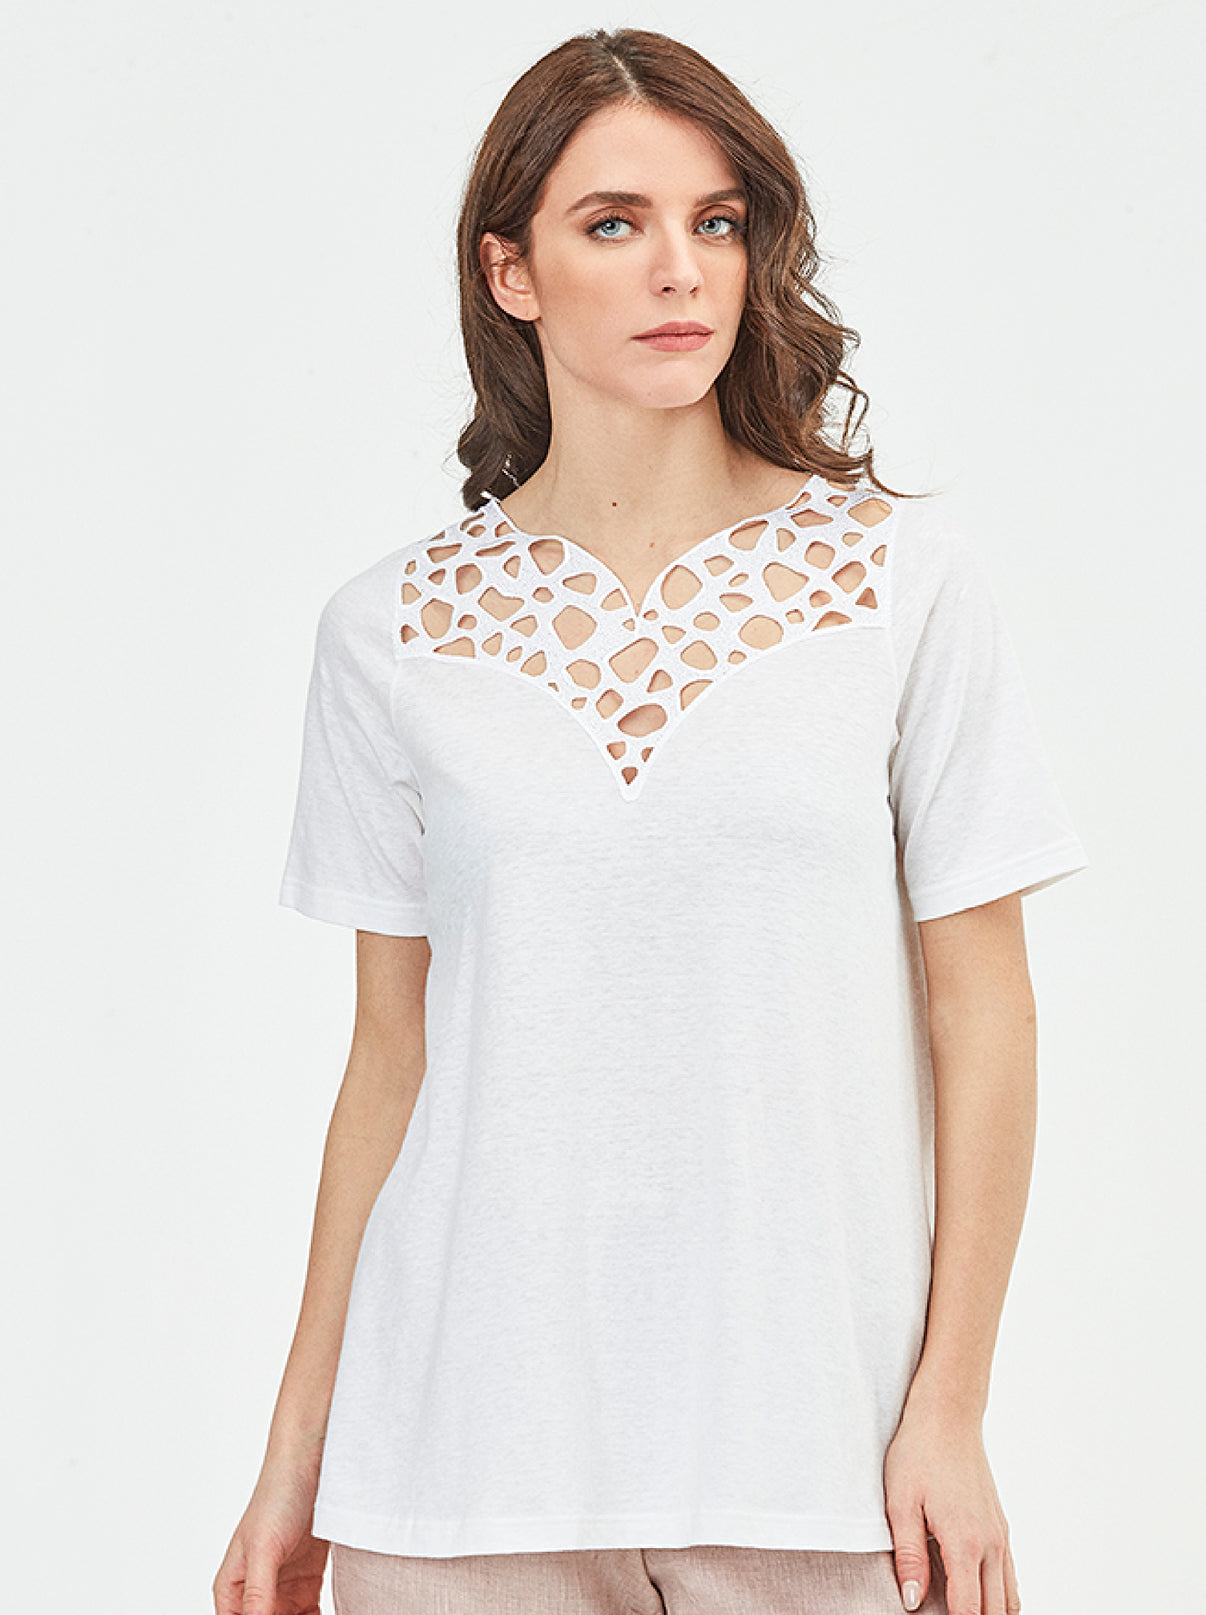 Cotton Linen T-Shirt with Macramé Motif 5734 - Oscalito